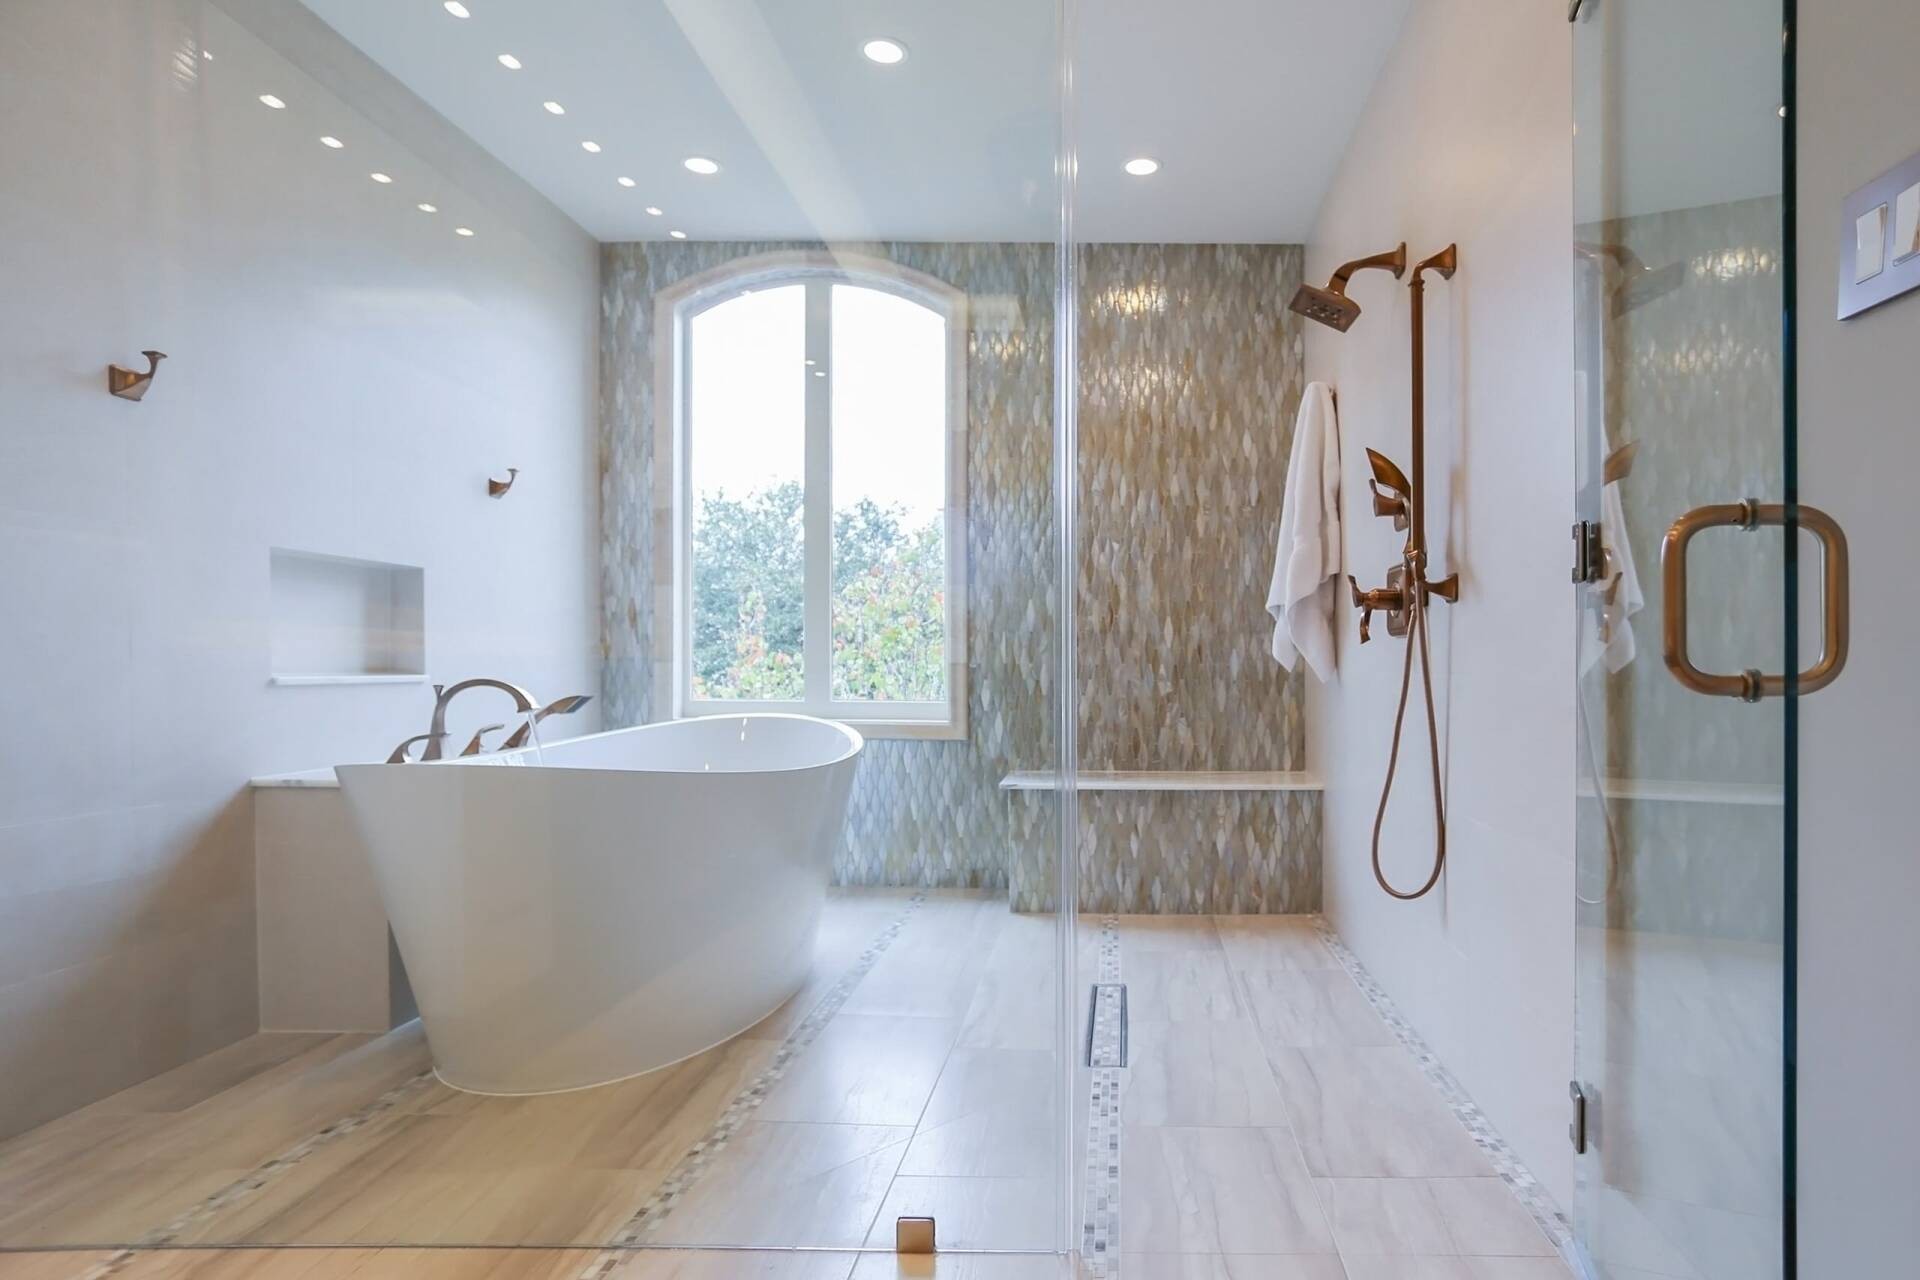 
Bồn tắm đơn rộng rãi và sang trọng hơn loại bồn tắm góc
